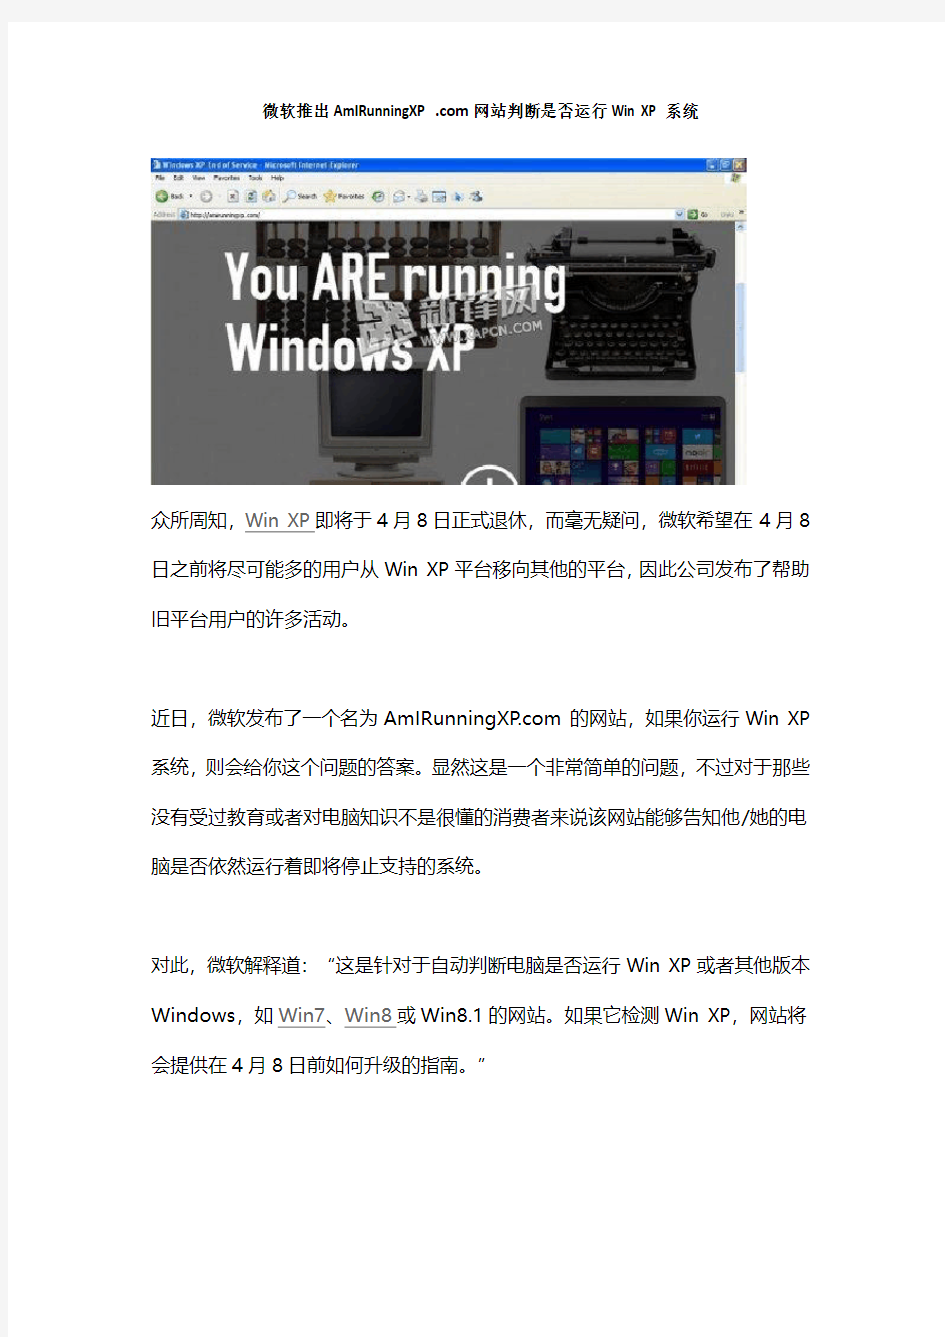 微软推出AmIRunningXP网站 判断是否运行Win XP系统